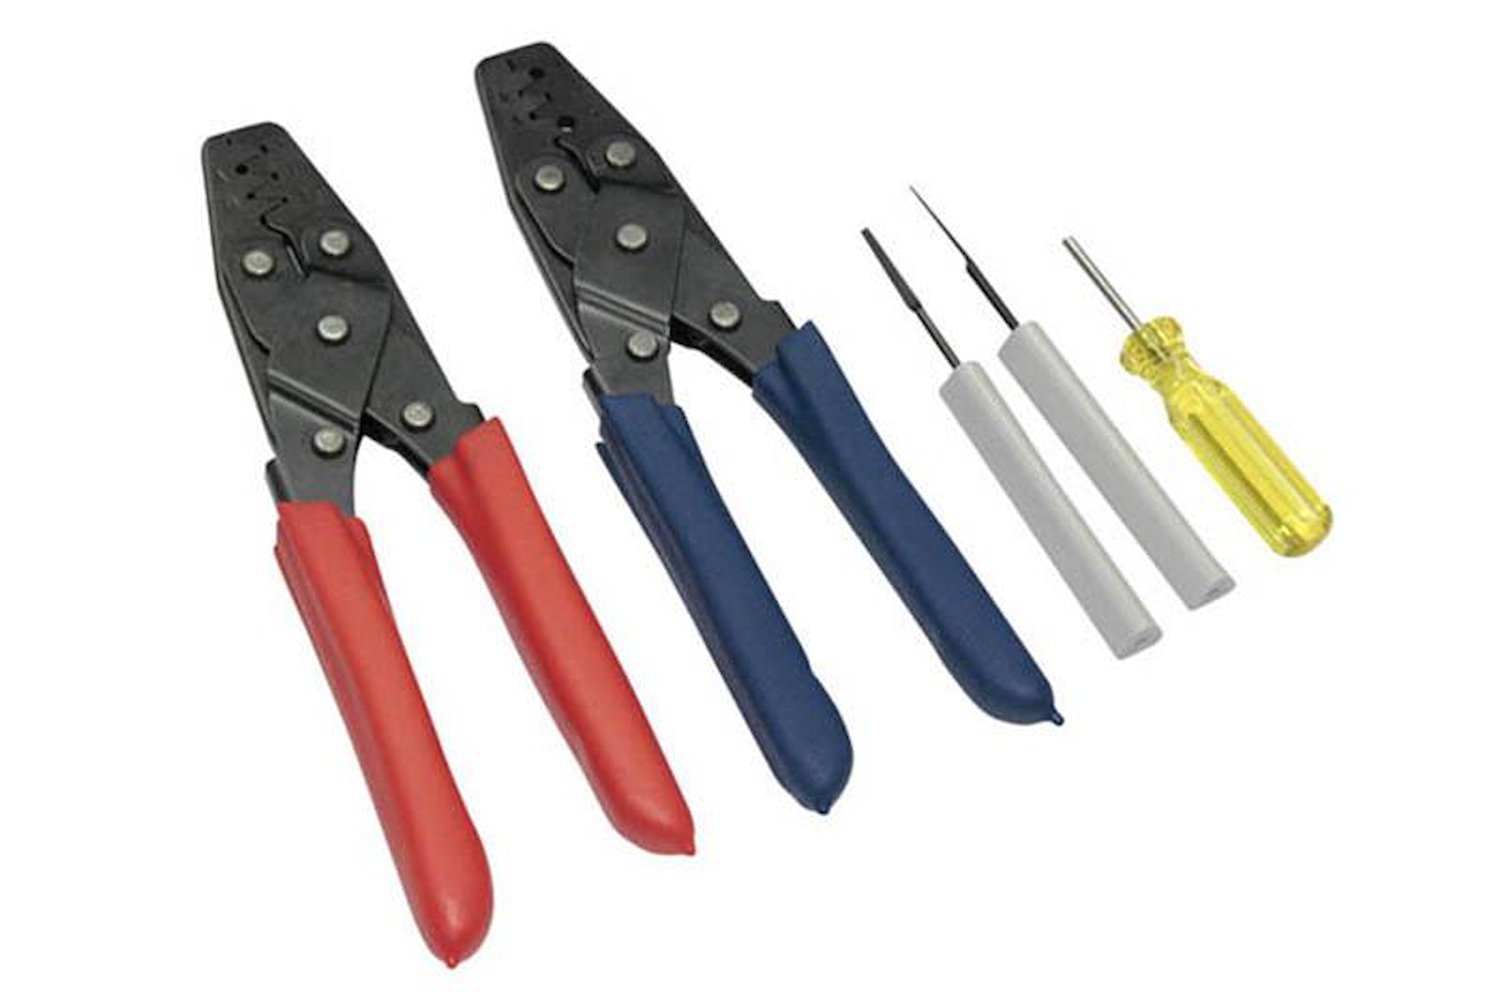 HT-070300 Dual Crimper Set, Includes 3-Pin Removal Tools